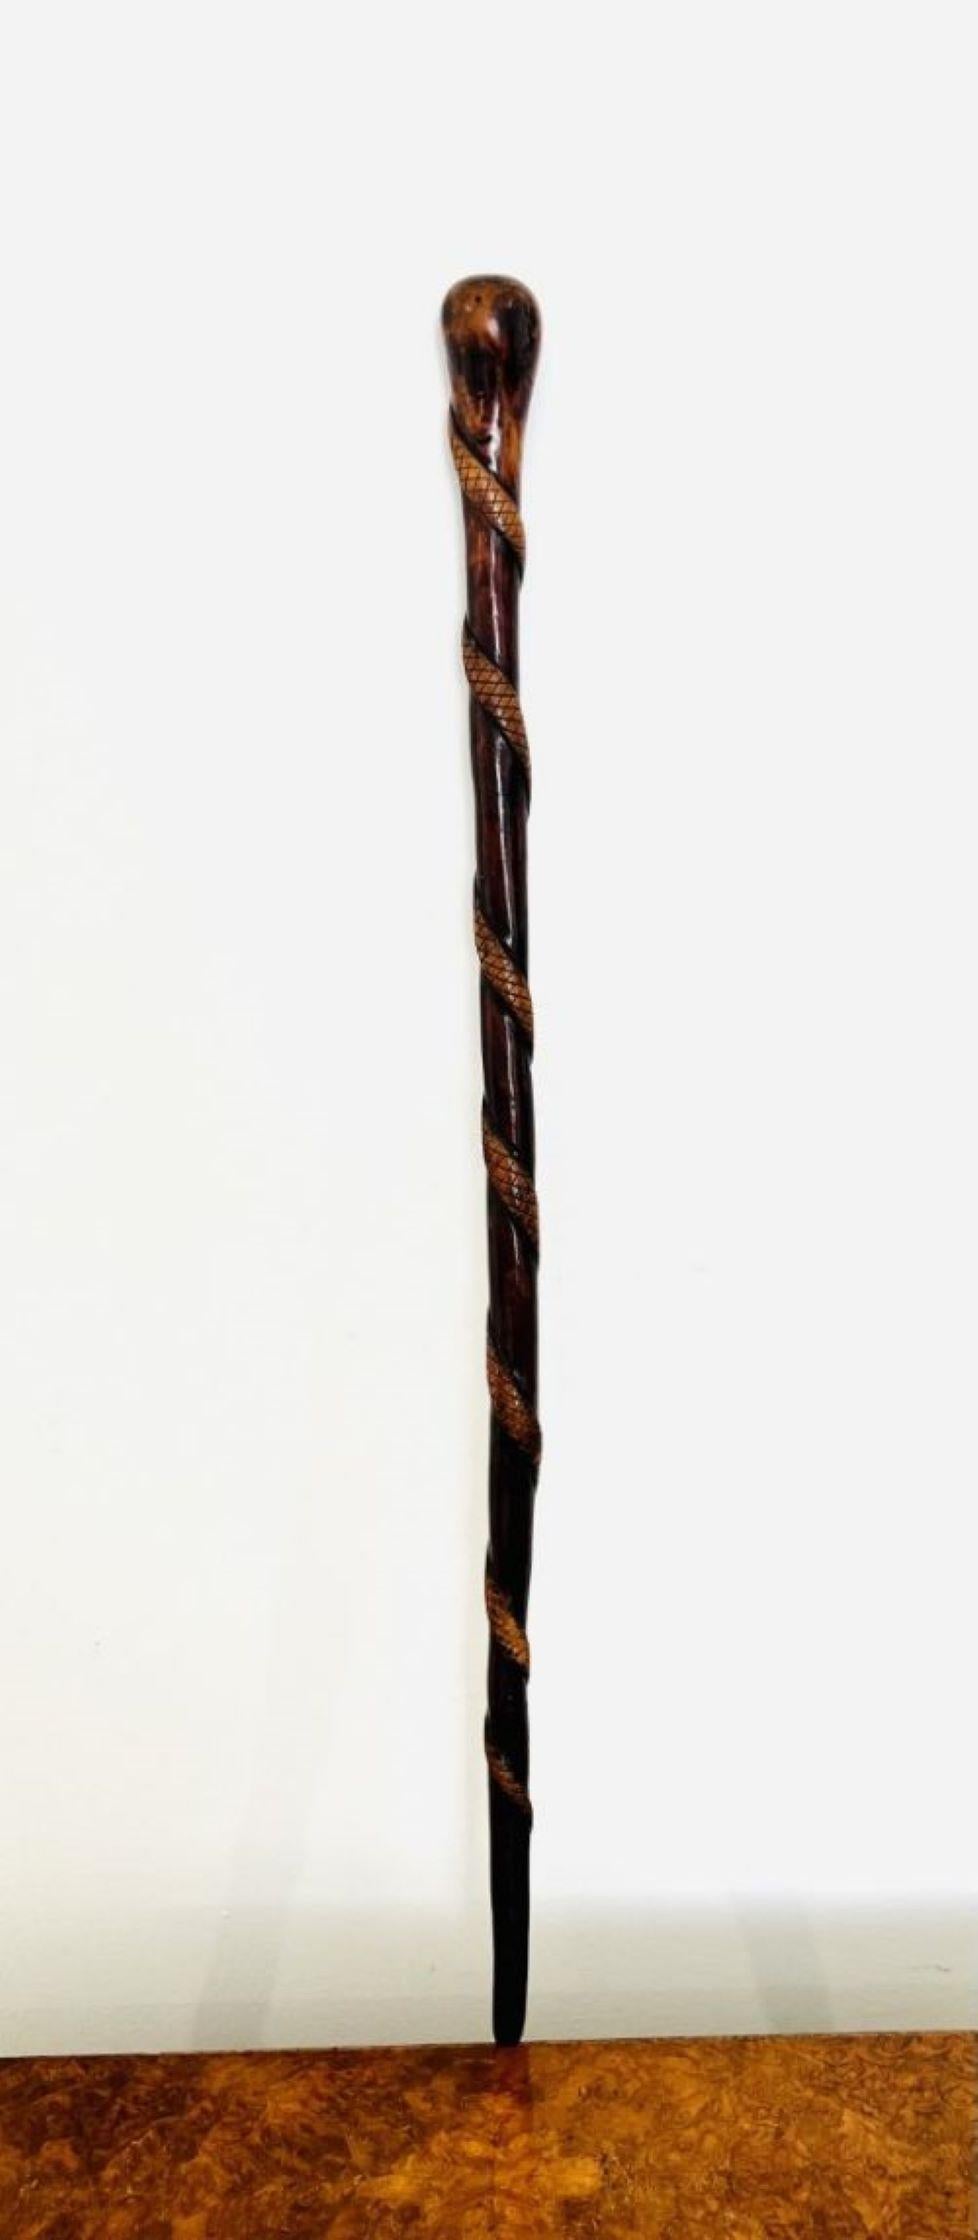 Ungewöhnliche antike viktorianische Qualität Hartholz Spazierstock mit einer ungewöhnlichen Qualität Hartholz antiken viktorianischen Spazierstock mit einer geschnitzten Schlange um ihn herum gewickelt. 